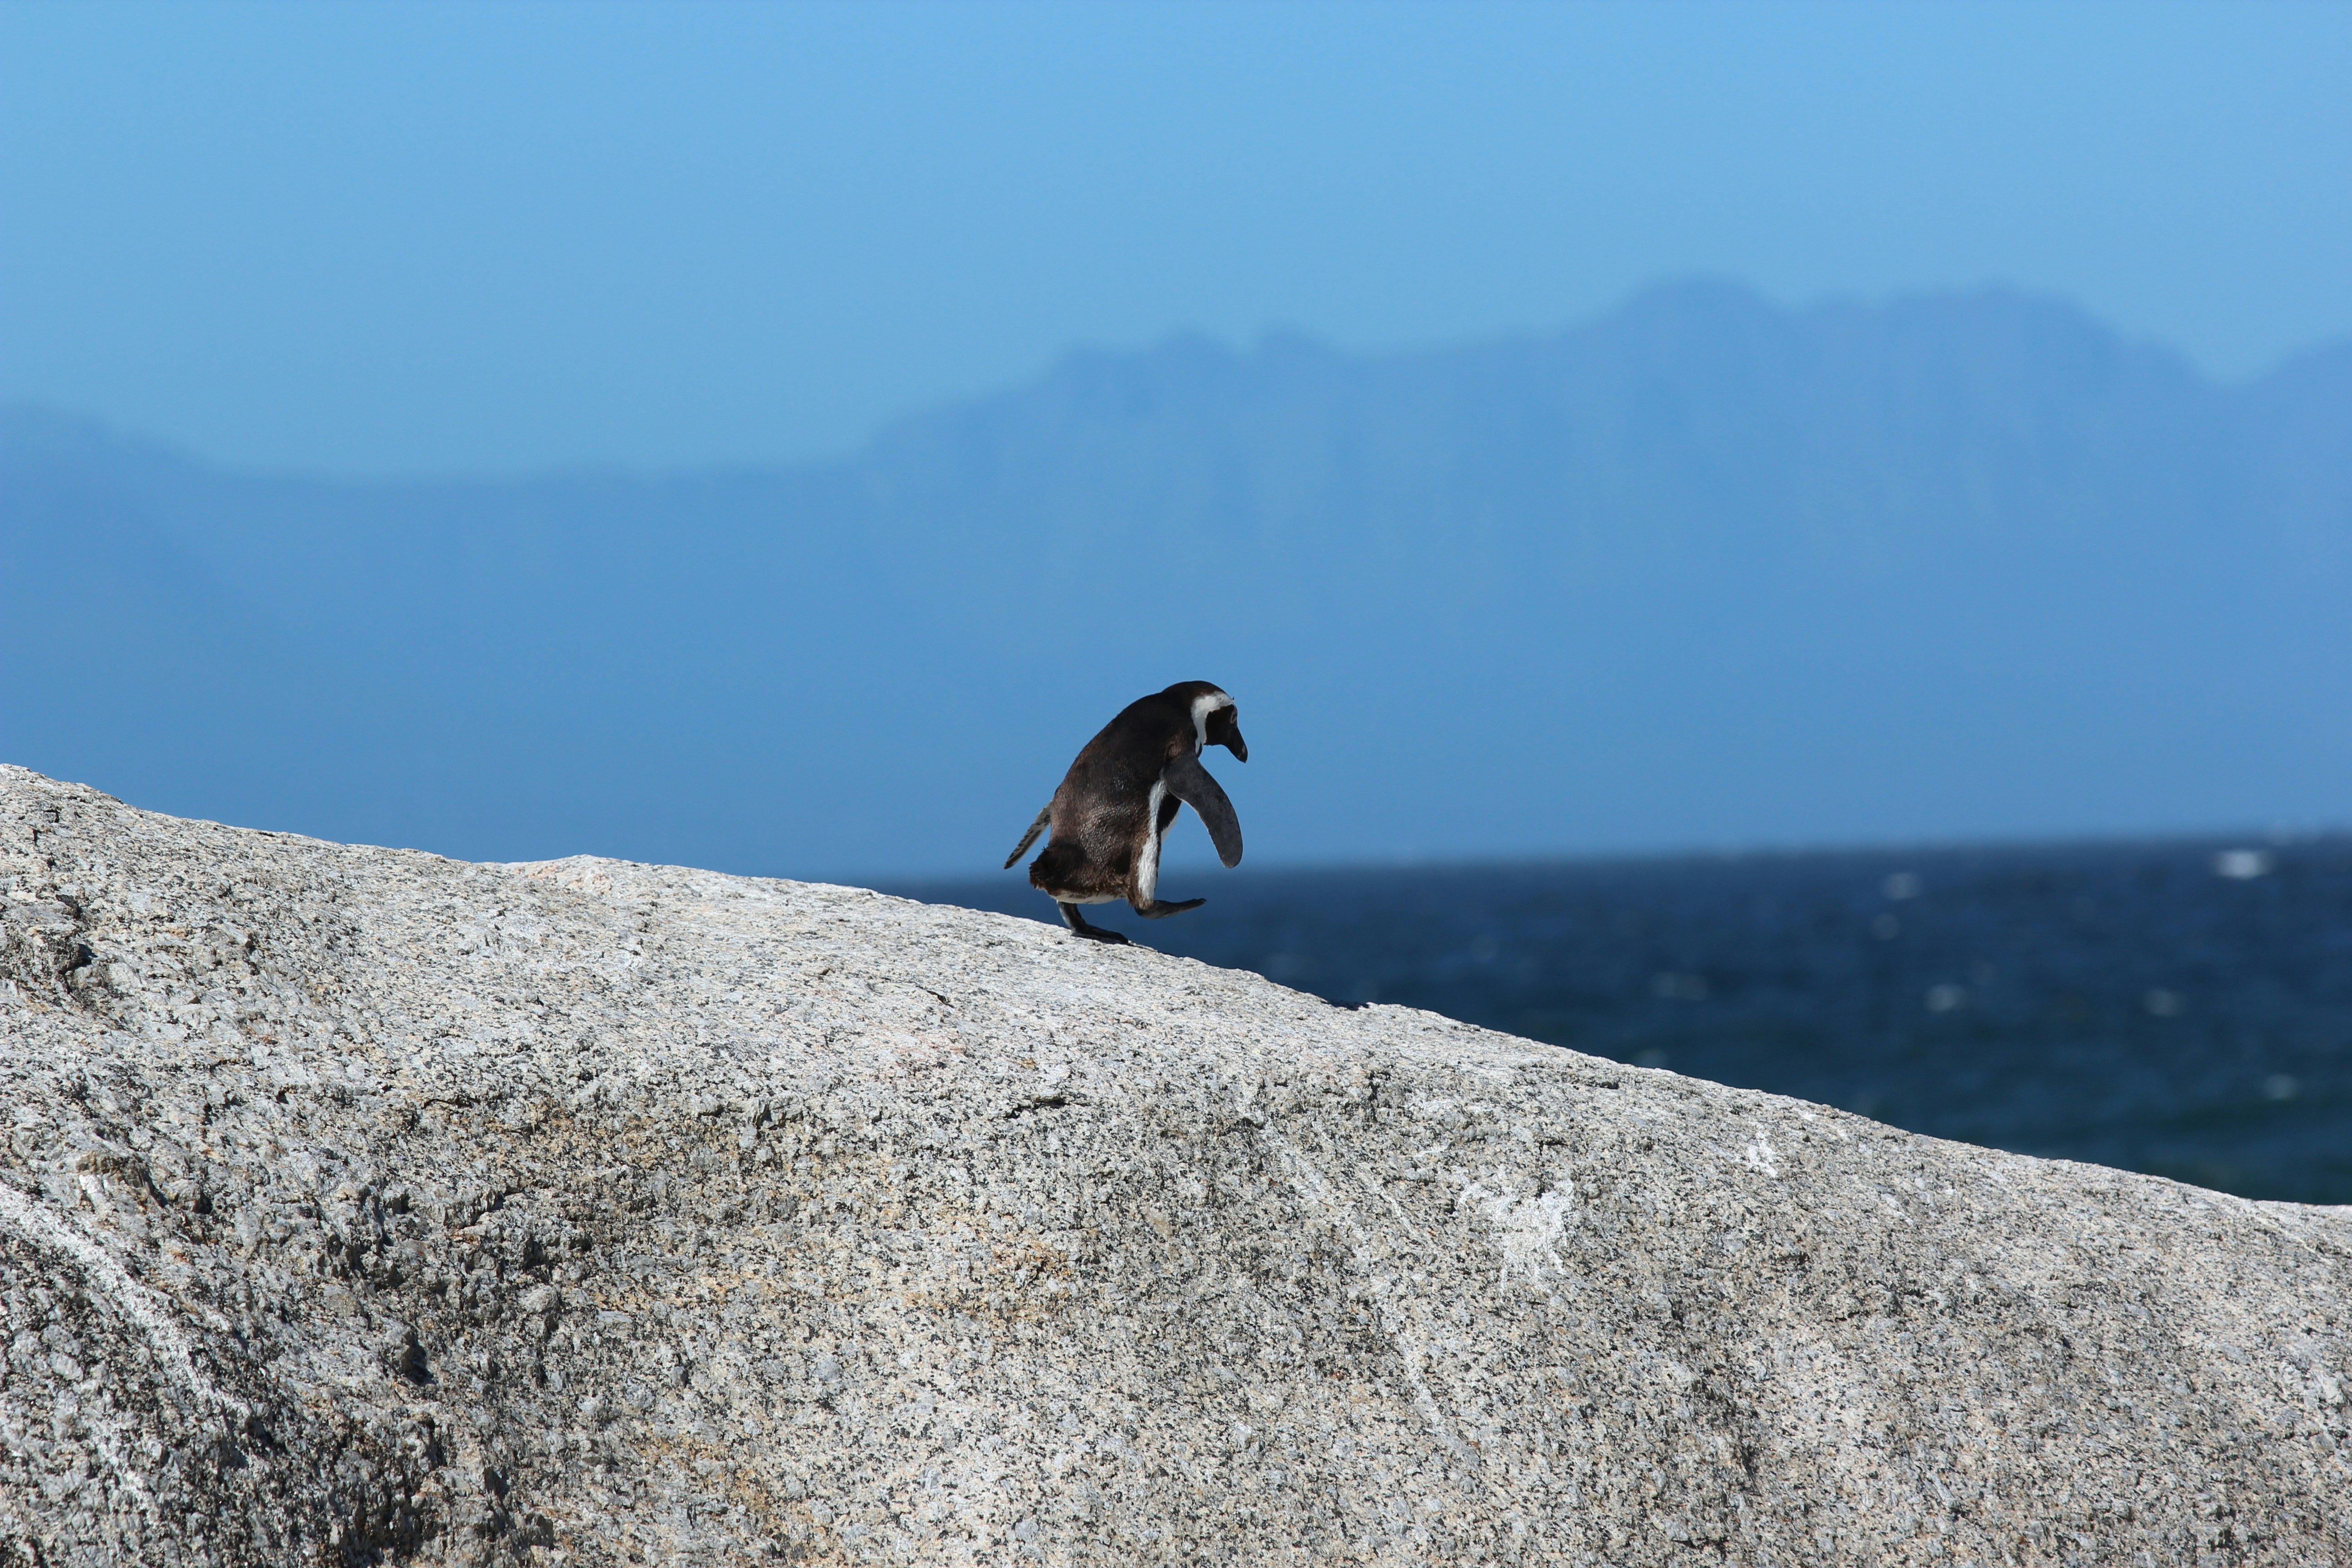 Penguin walks on rock